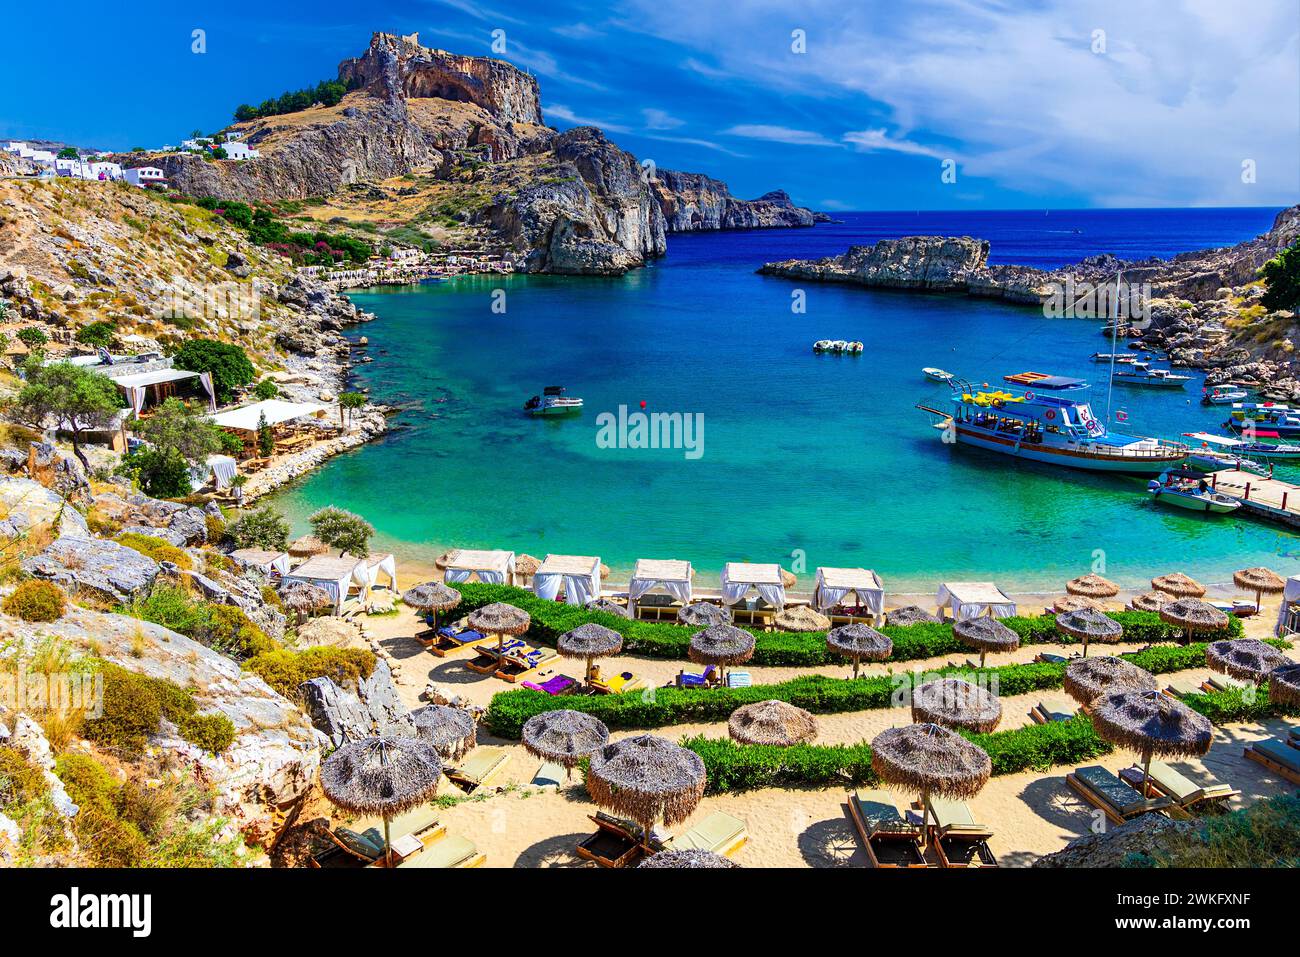 Lindos sull'isola di Rodi, Grecia. Spiaggia della baia di San Paolo e Acropoli, sull'isola di Rodi, Grecia al Mar Egeo, Europa Foto Stock